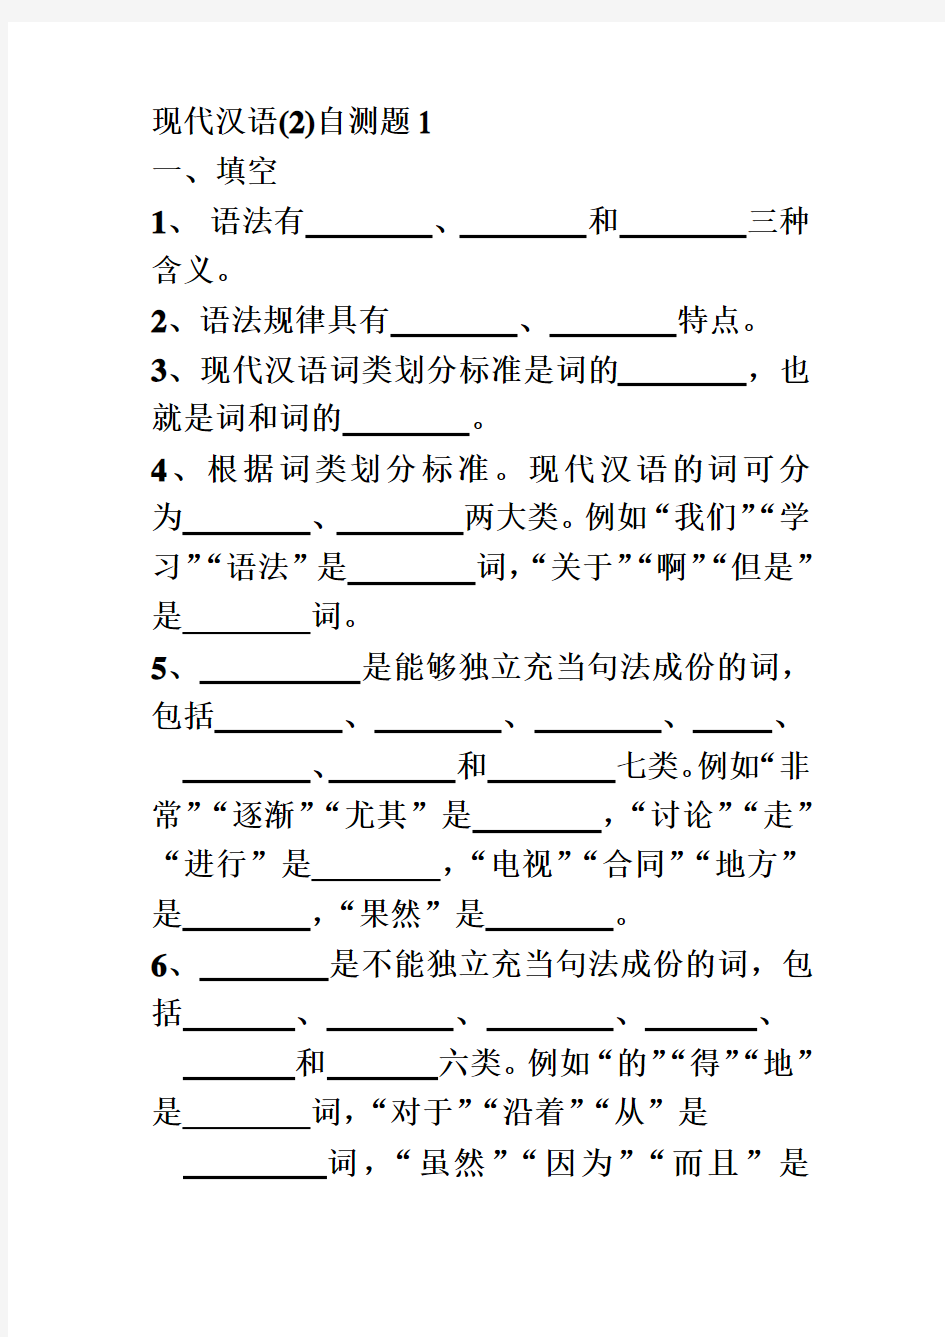 现代汉语(2)自测题1